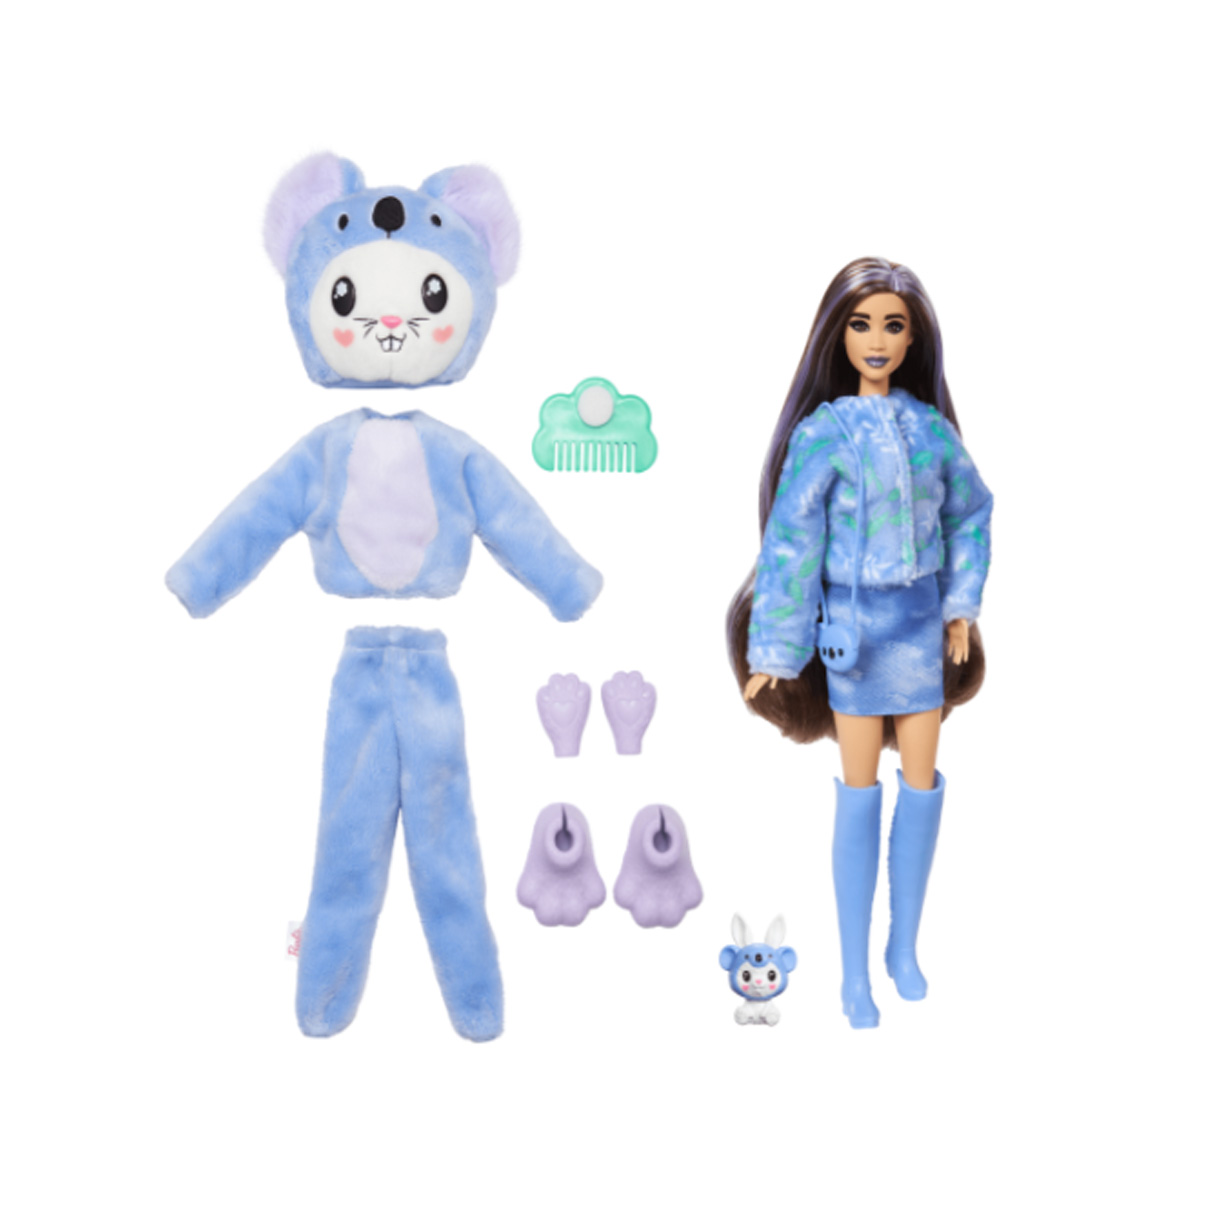 barbie cutie reveal conejo koala ( mattel - hrk26)